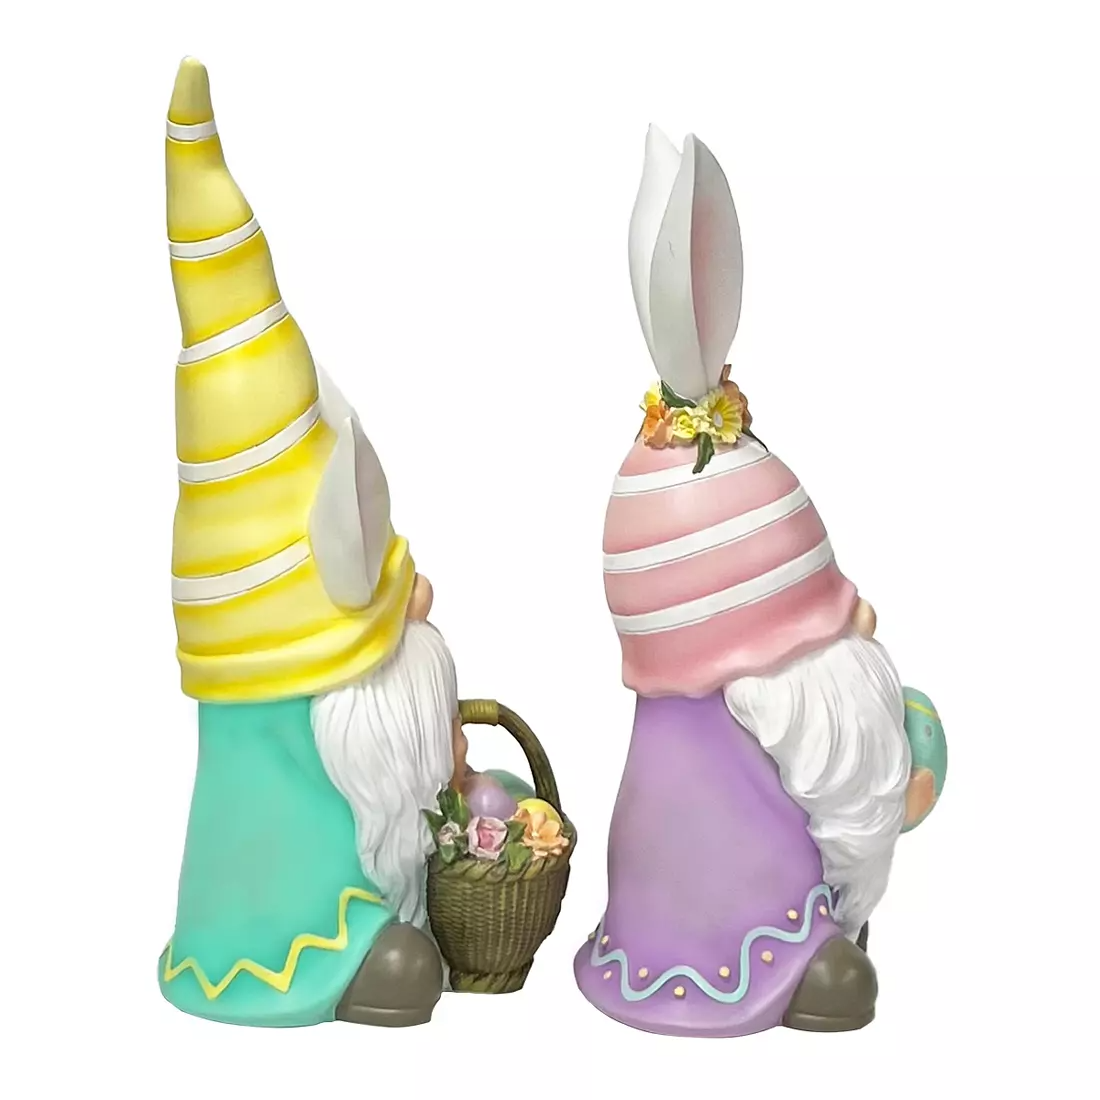 Berkley Jensen Resin Easter Gnomes  with Bunny Ears, 2 pk.